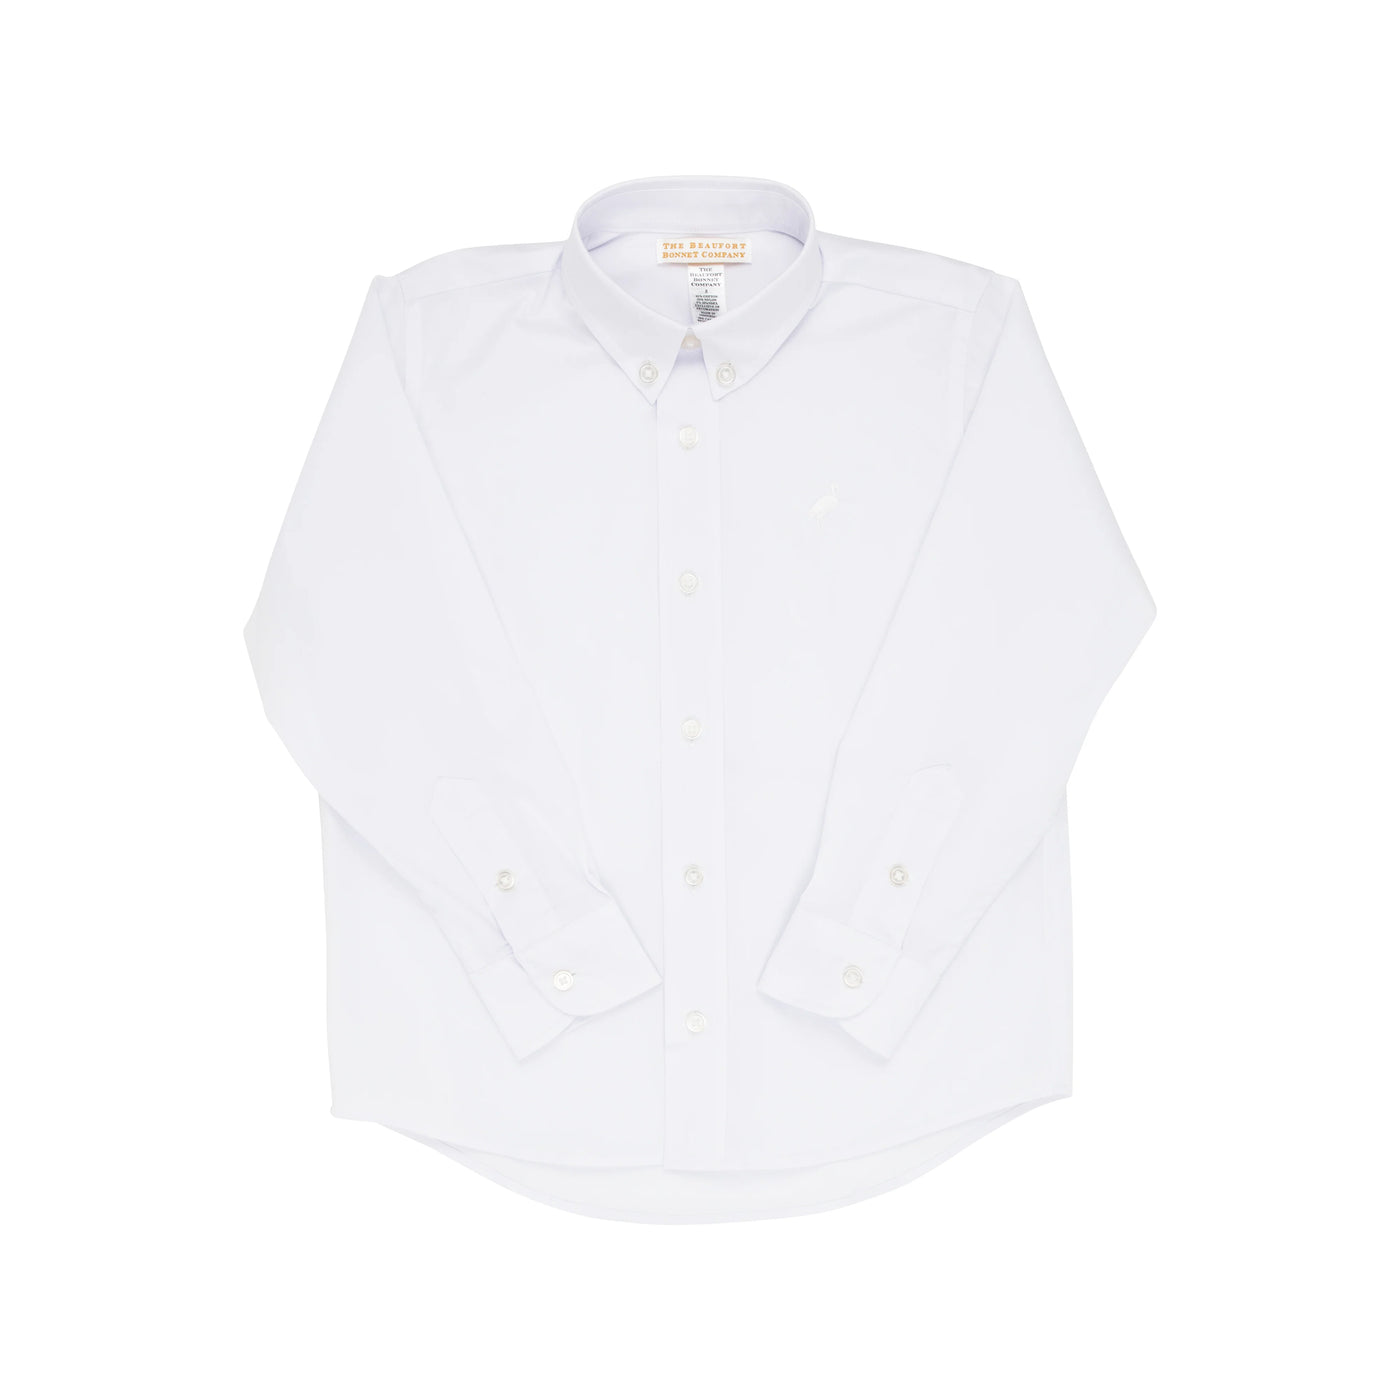 Dean's List Dress Shirt - White - Breckenridge Baby